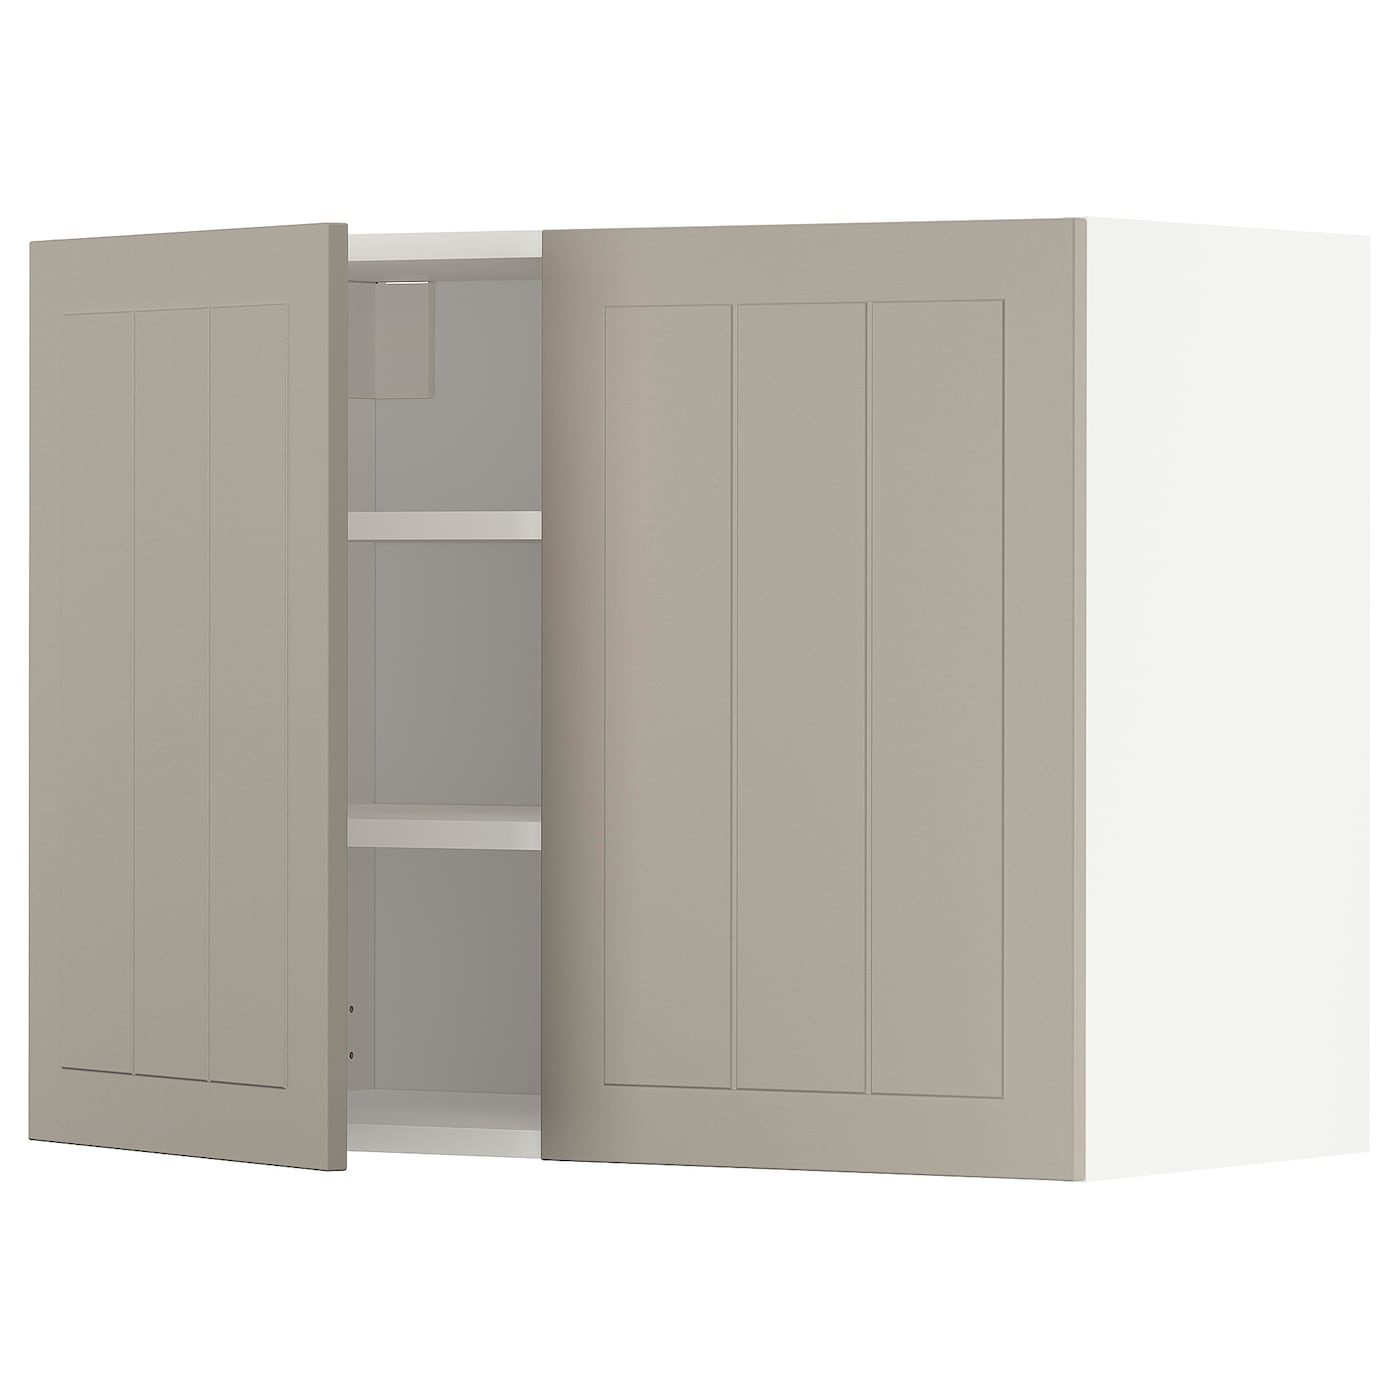 Навесной шкаф с полкой - METOD IKEA/ МЕТОД ИКЕА, 60х80 см,  белый/светло-коричневый